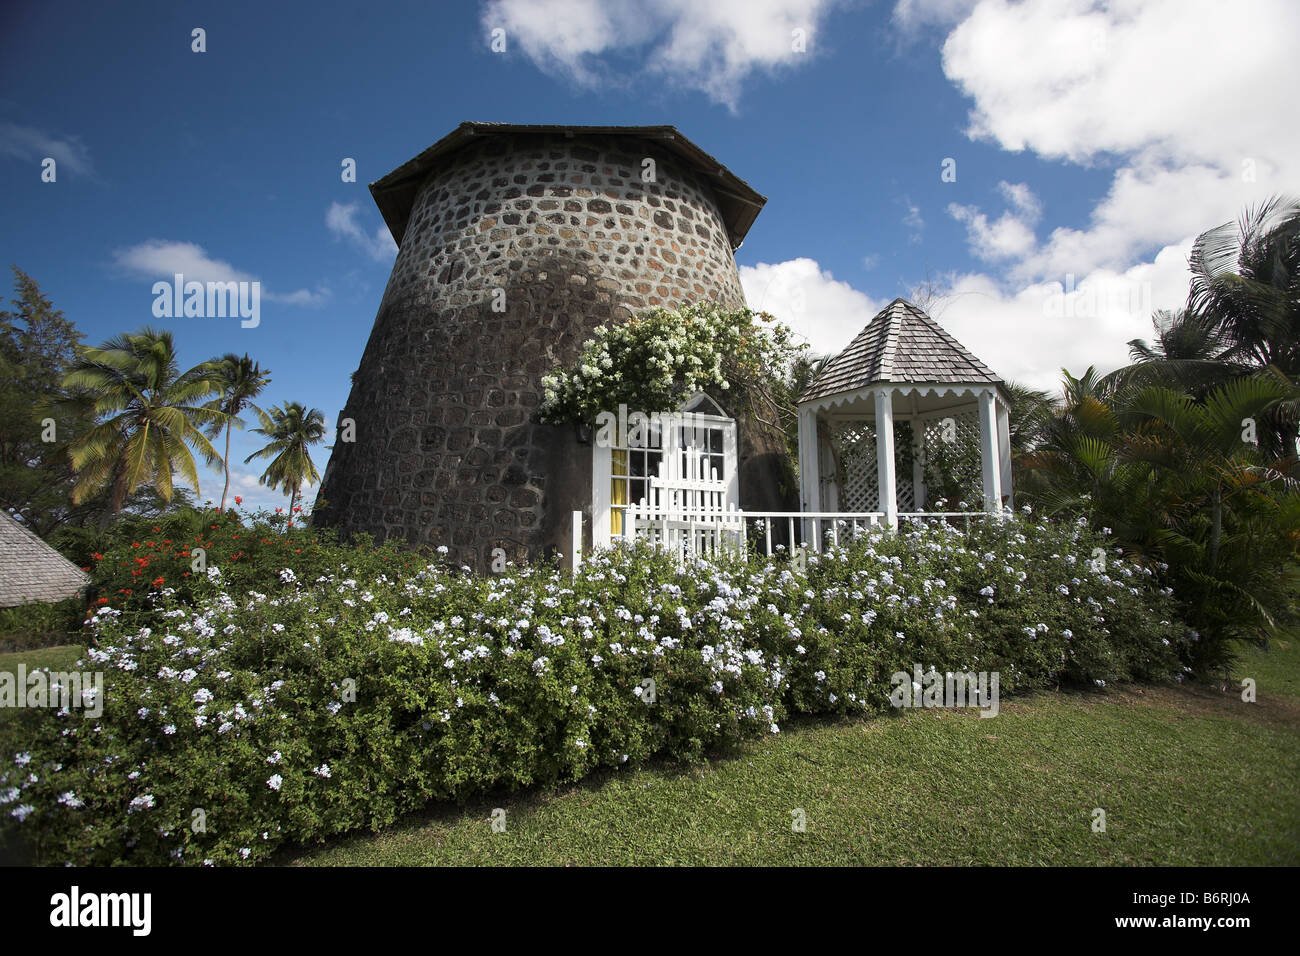 Un hotel boutique convertida de un patrimonio cultural de Santa Lucía, West Indes, Caribe. Foto de stock